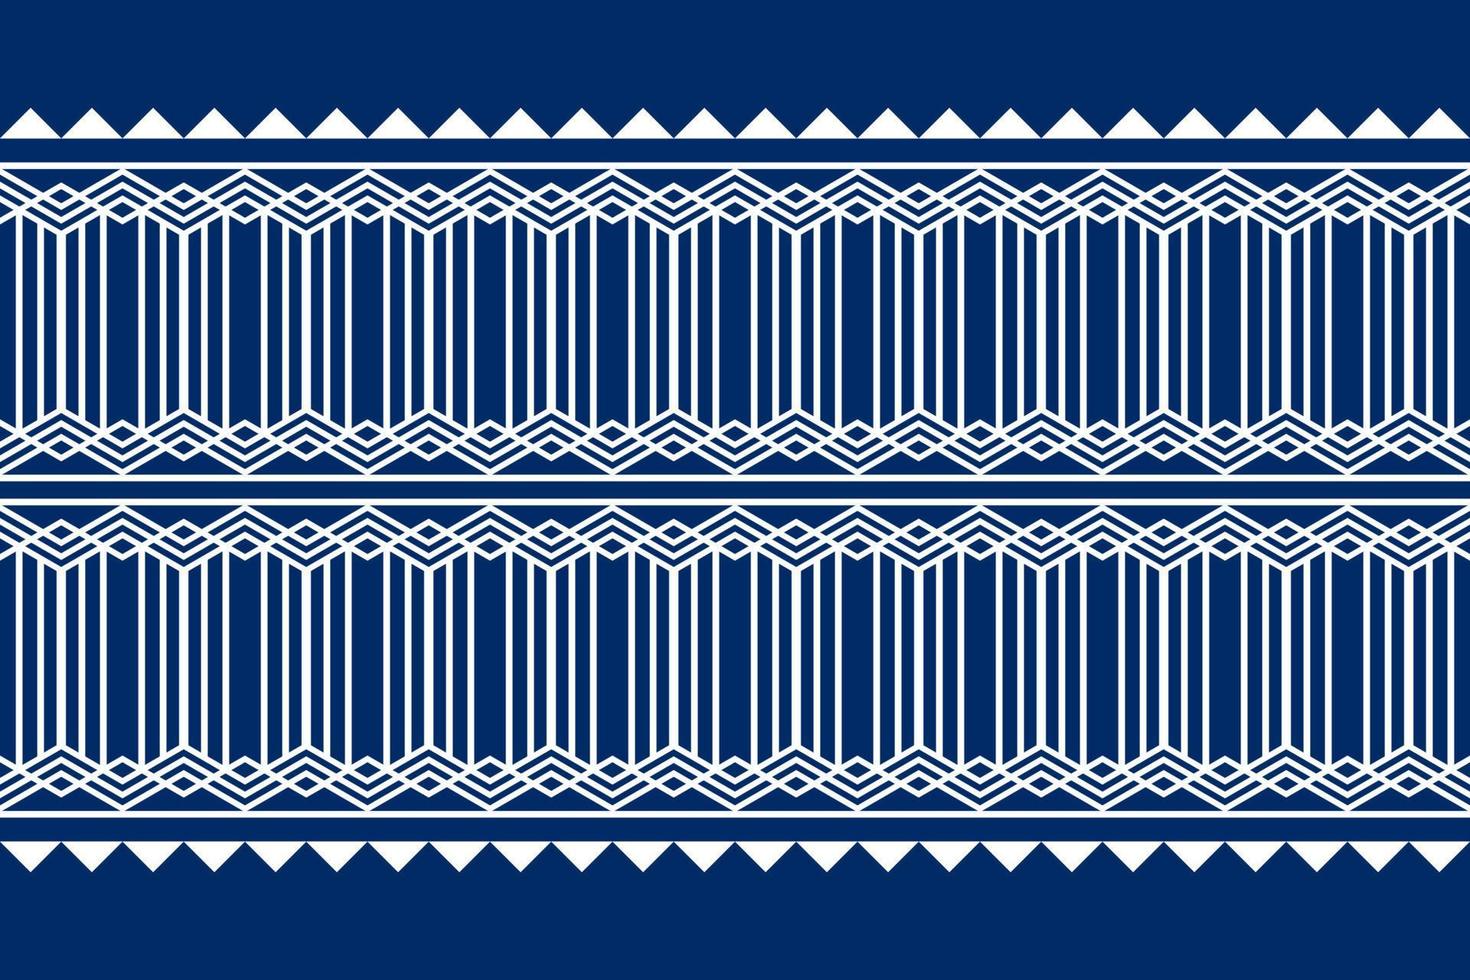 diseño de patrones sin fisuras étnicos geométricos azul oscuro y blanco para papel tapiz, fondo, tela, cortina, alfombra, ropa y envoltura. vector